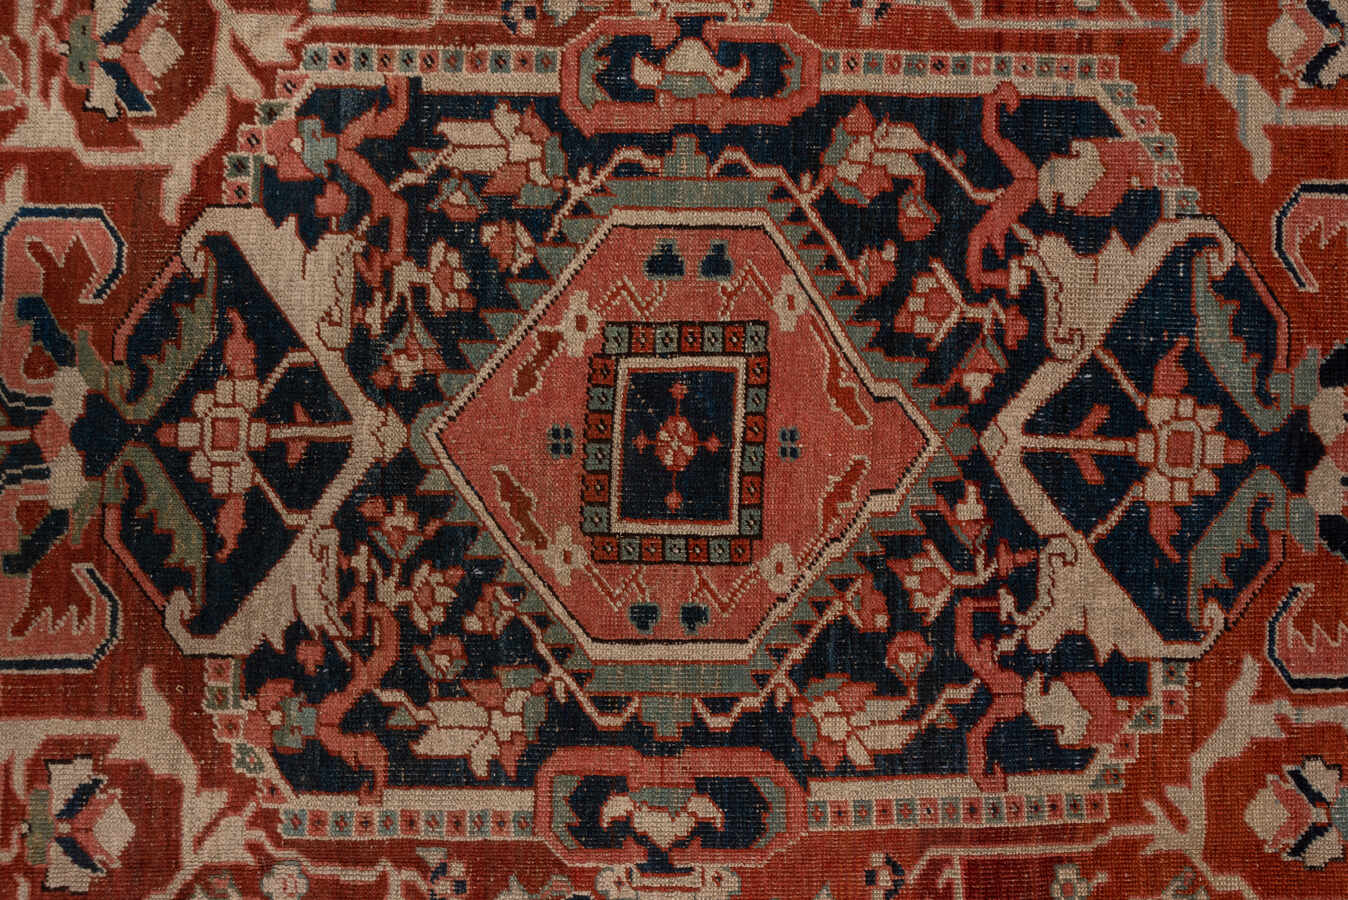 Antique heriz Carpet - # 56742